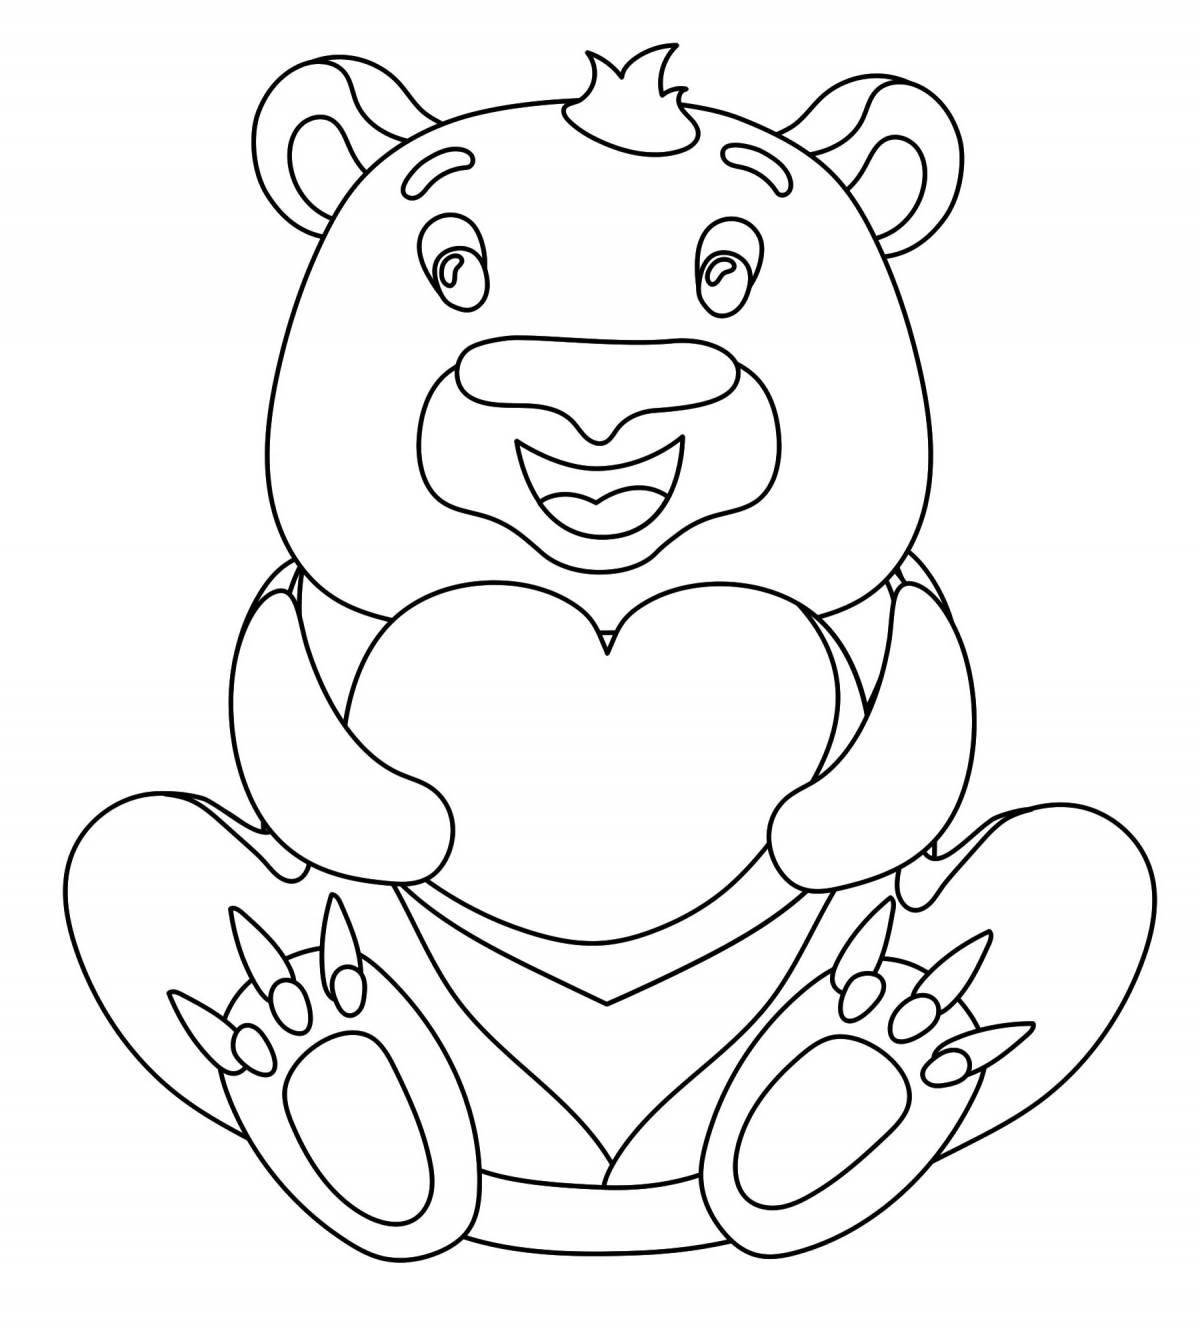 Раскраска счастливый медвежонок с сердечком